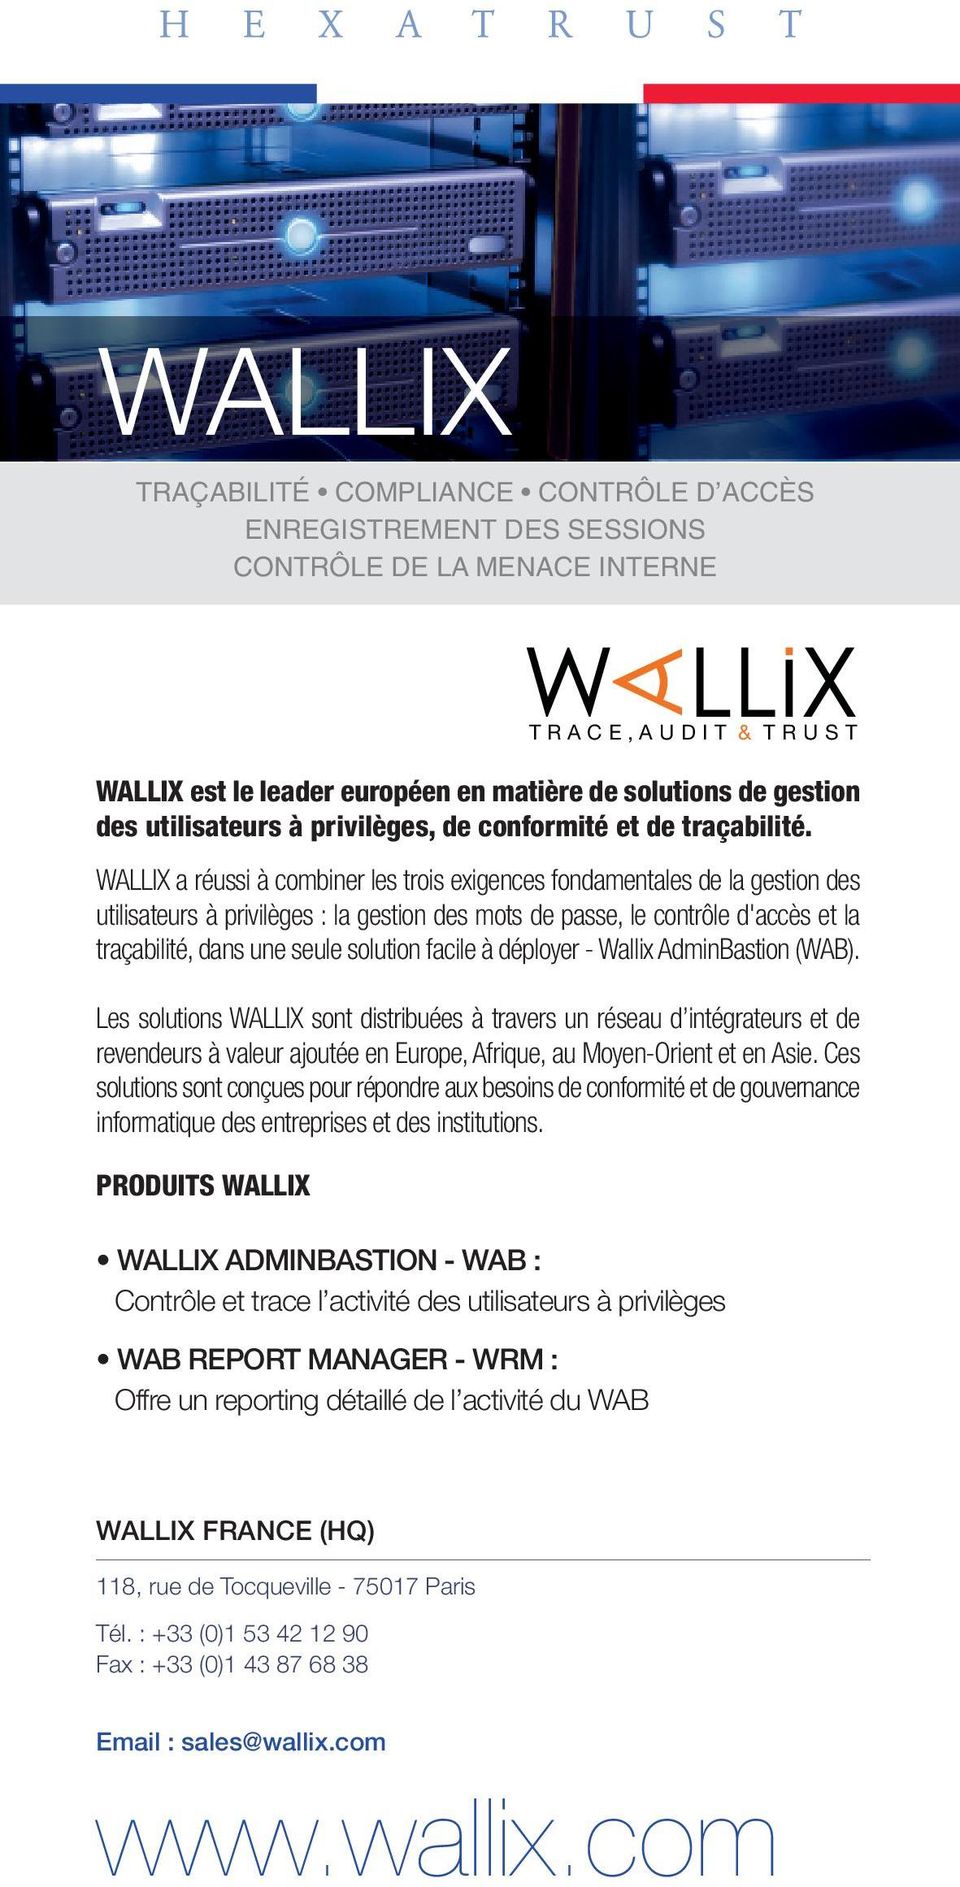 WALLIX a réussi à combiner les trois exigences fondamentales de la gestion des utilisateurs à privilèges : la gestion des mots de passe, le contrôle d'accès et la traçabilité, dans une seule solution